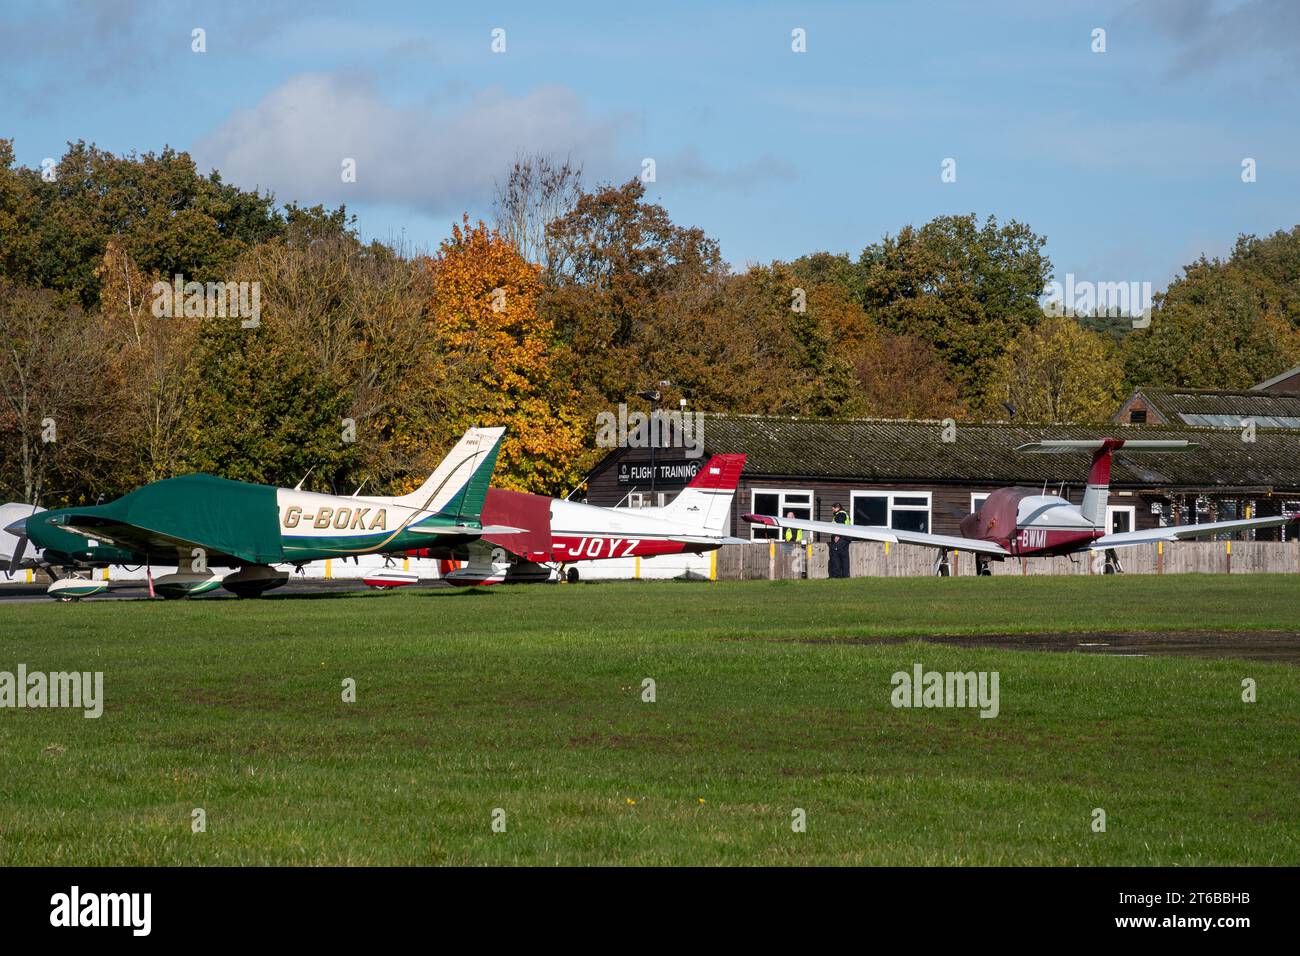 Fairoaks aéroport dans le Surrey, Angleterre, Royaume-Uni, avec avions avions avions avions Banque D'Images